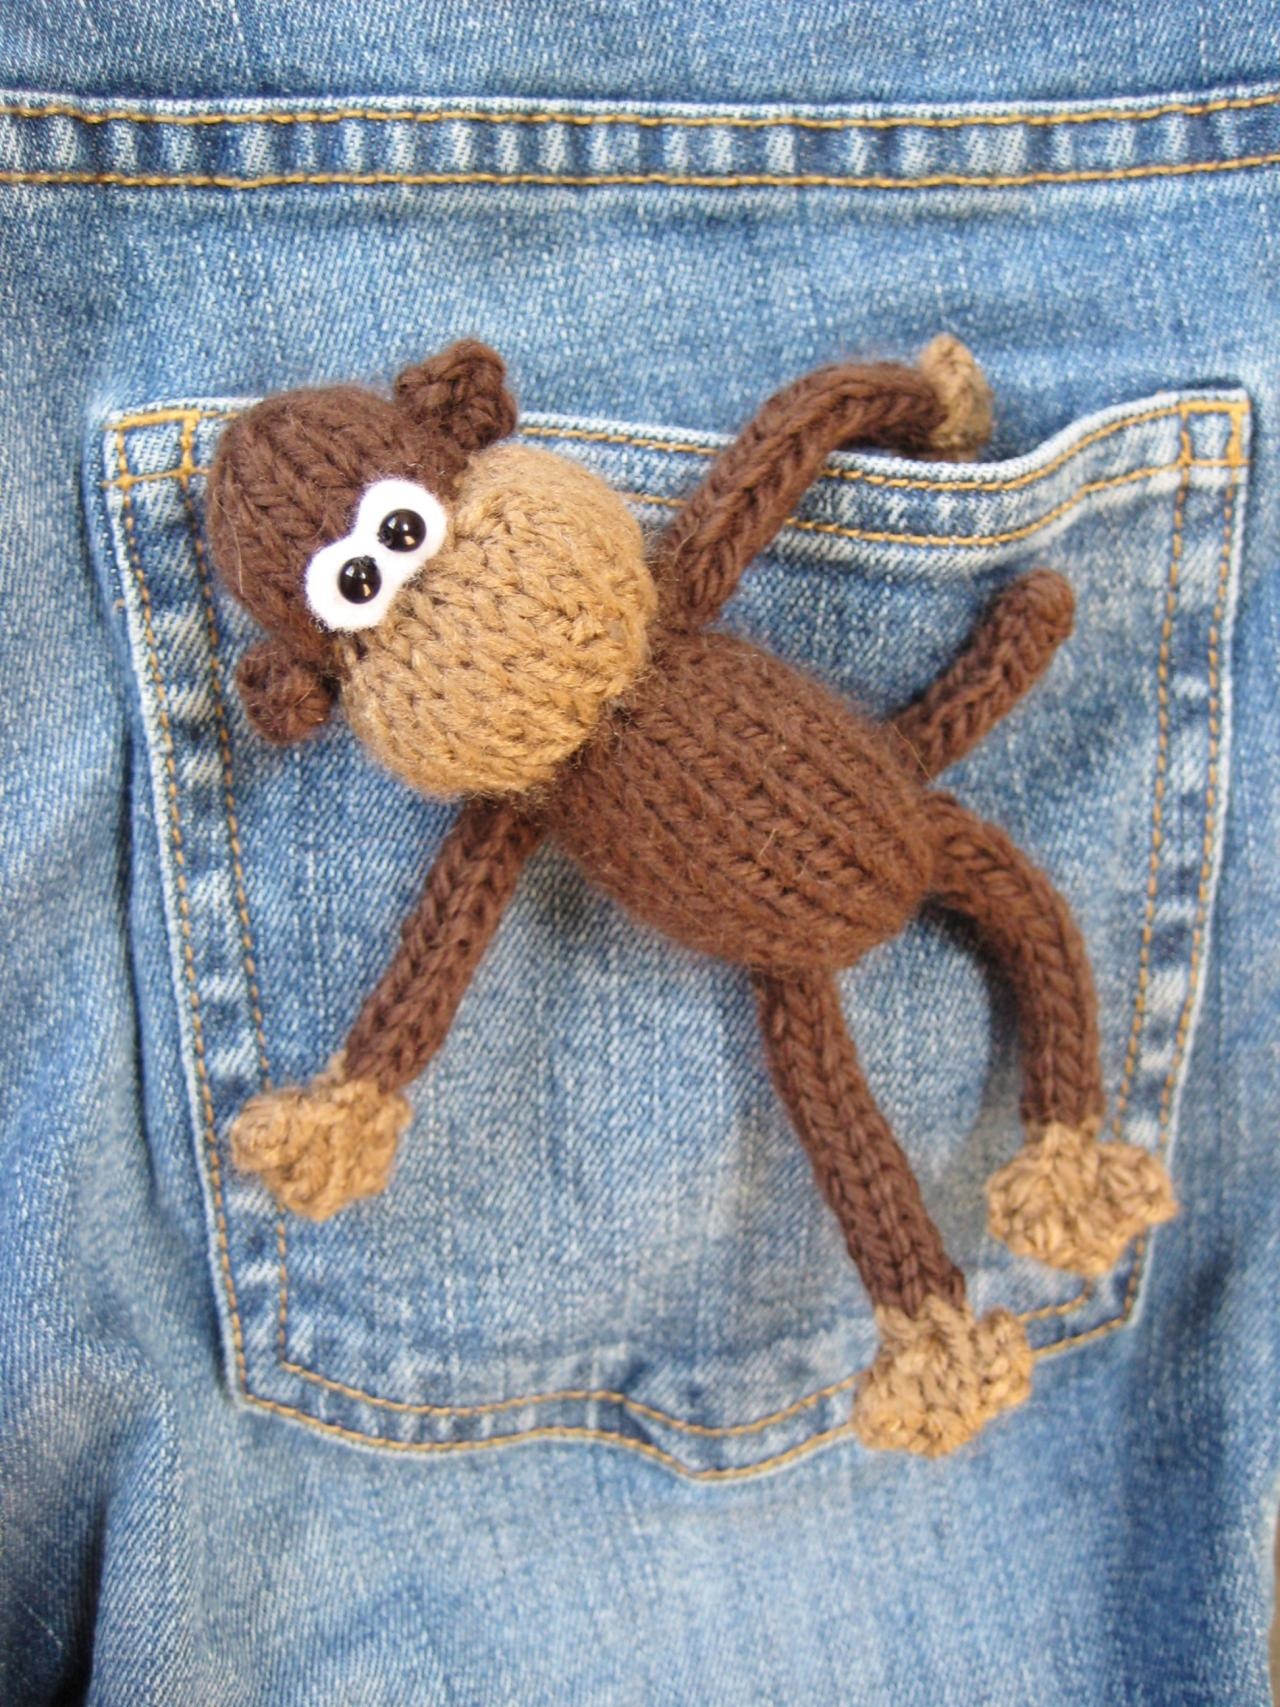 Pocket monkey